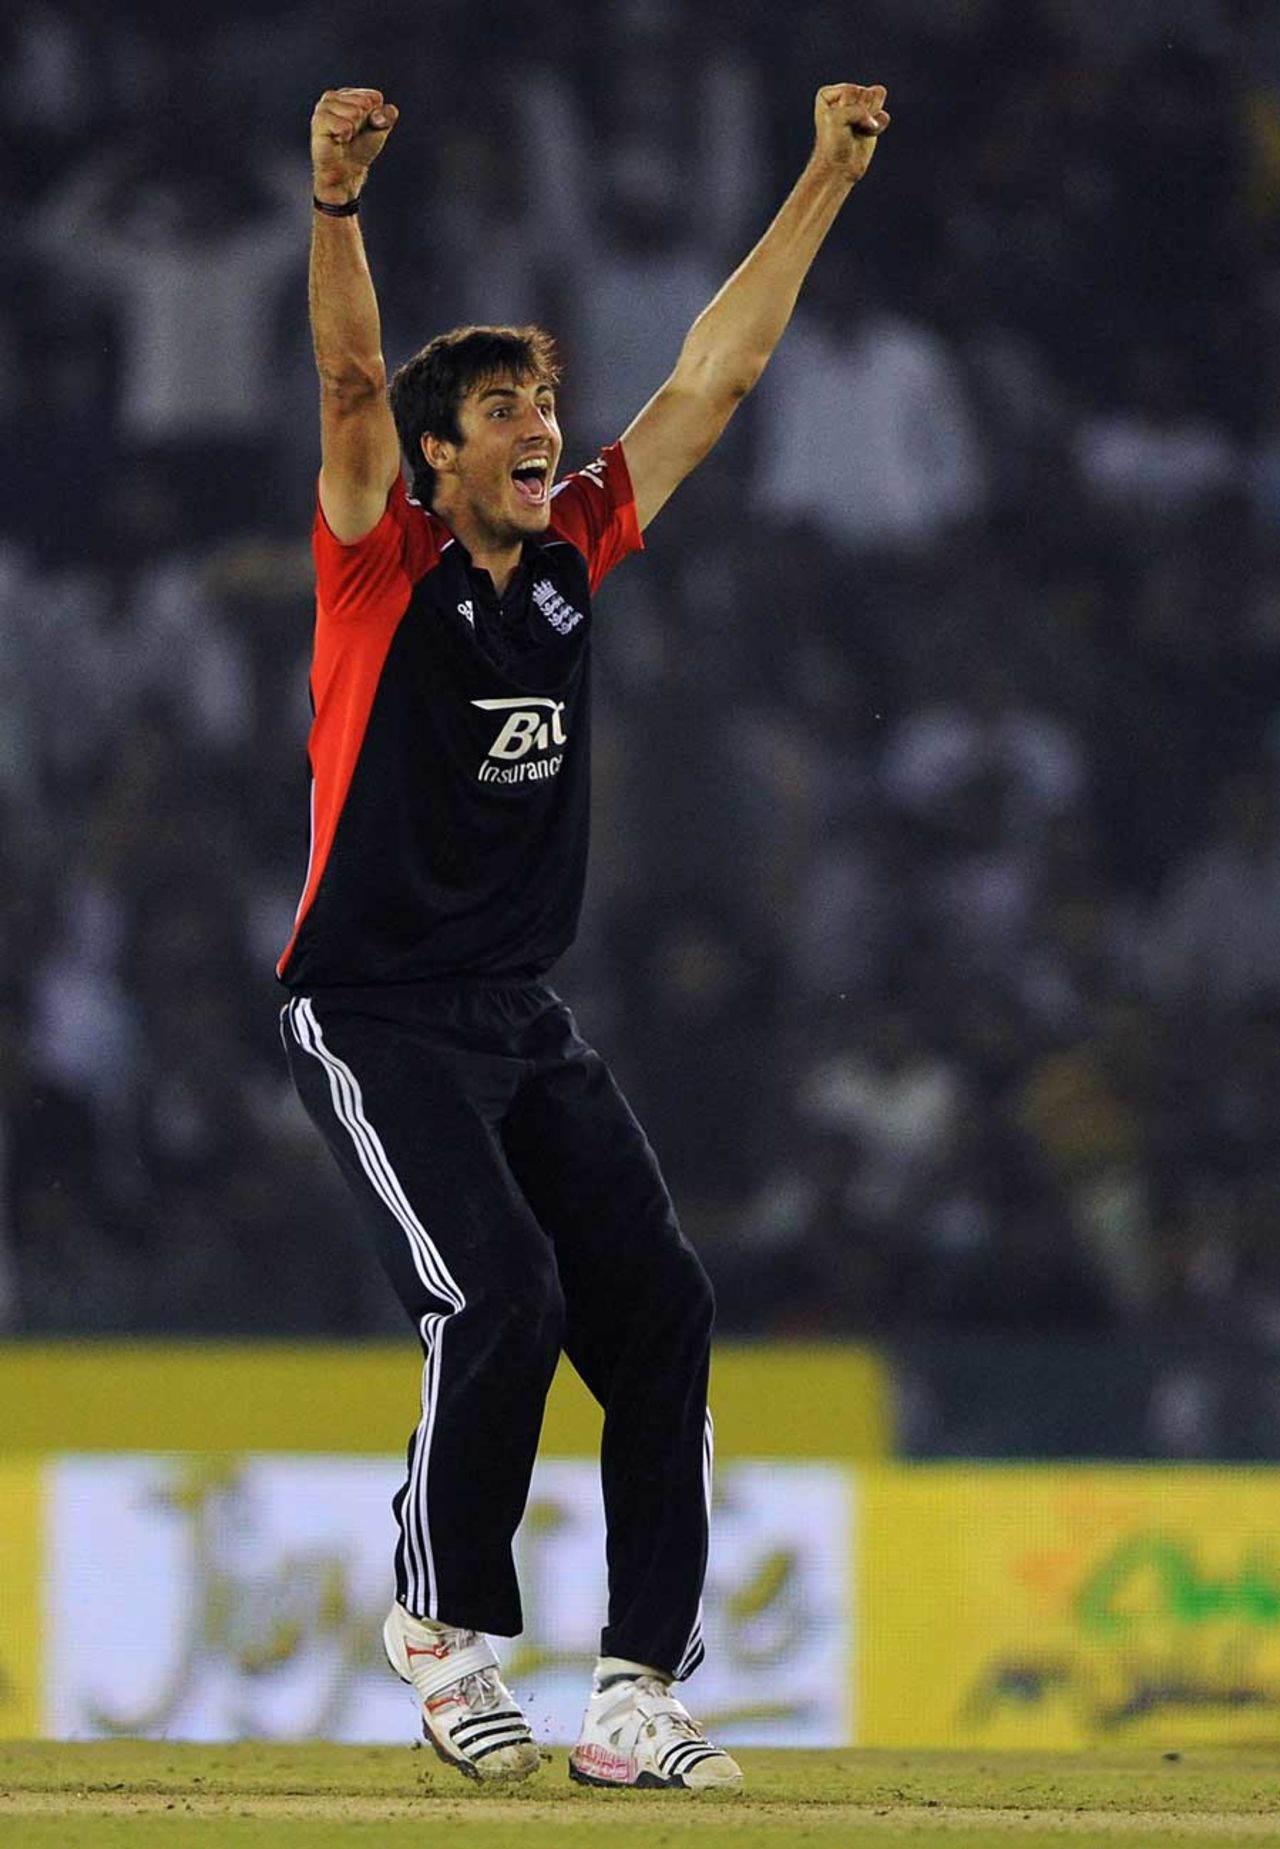 Steven Finn made crucial breakthroughs for England, India v England, 3rd ODI, Mohali, October 20, 2011